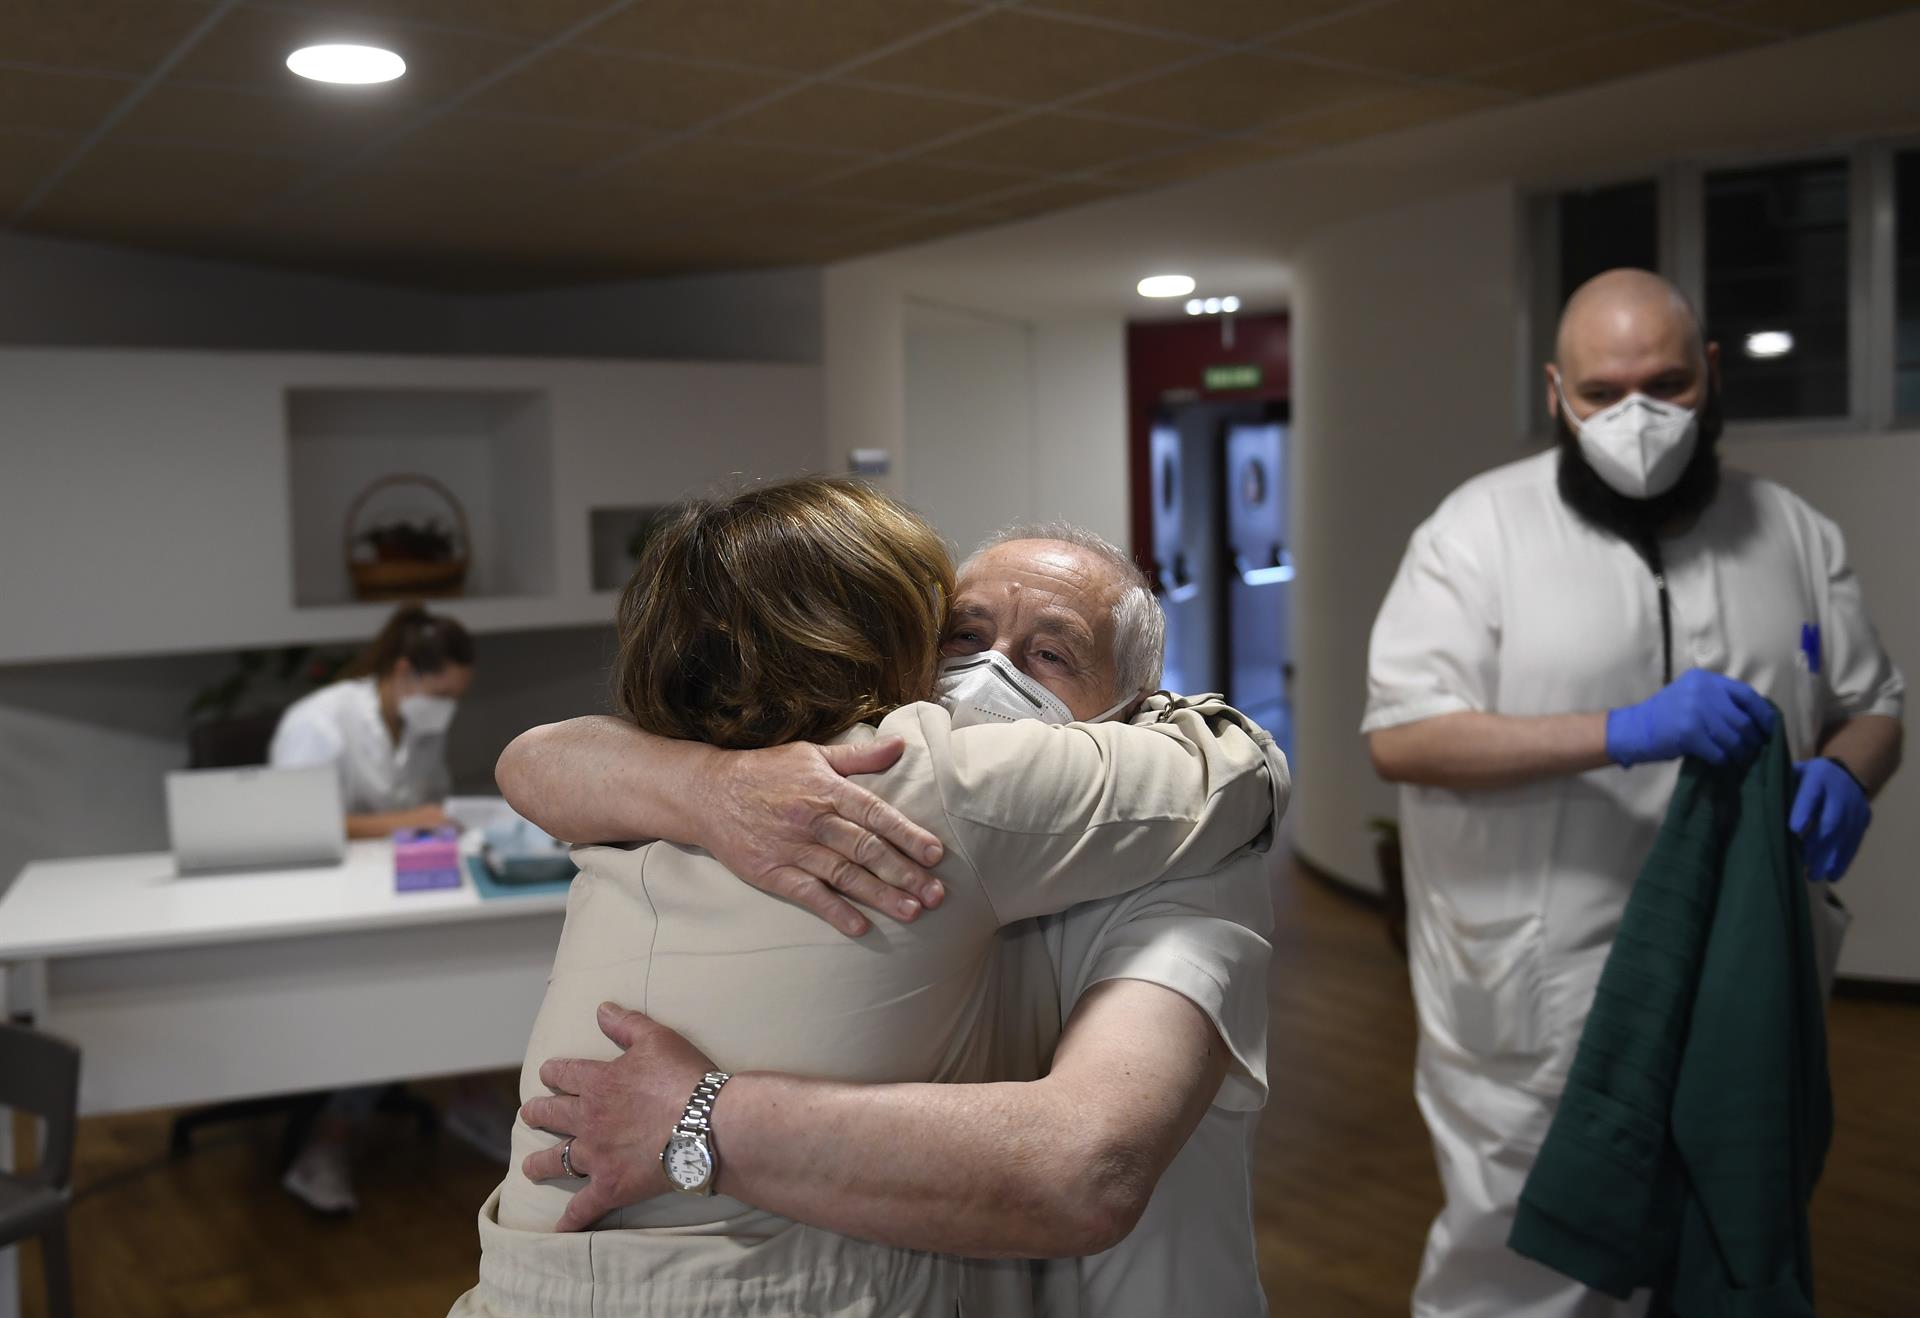  Un hombre da un abrazo tras recibir este jueves la tercera dosis de la vacuna contra el coronavirus en la Residencia La Mixta de Gijón, Asturias cuando comienza la vacunación de dicha dosis a los residentes en los centros sociosanitarios de personas mayores del Principado. EFE/ Eloy Alonso POOL